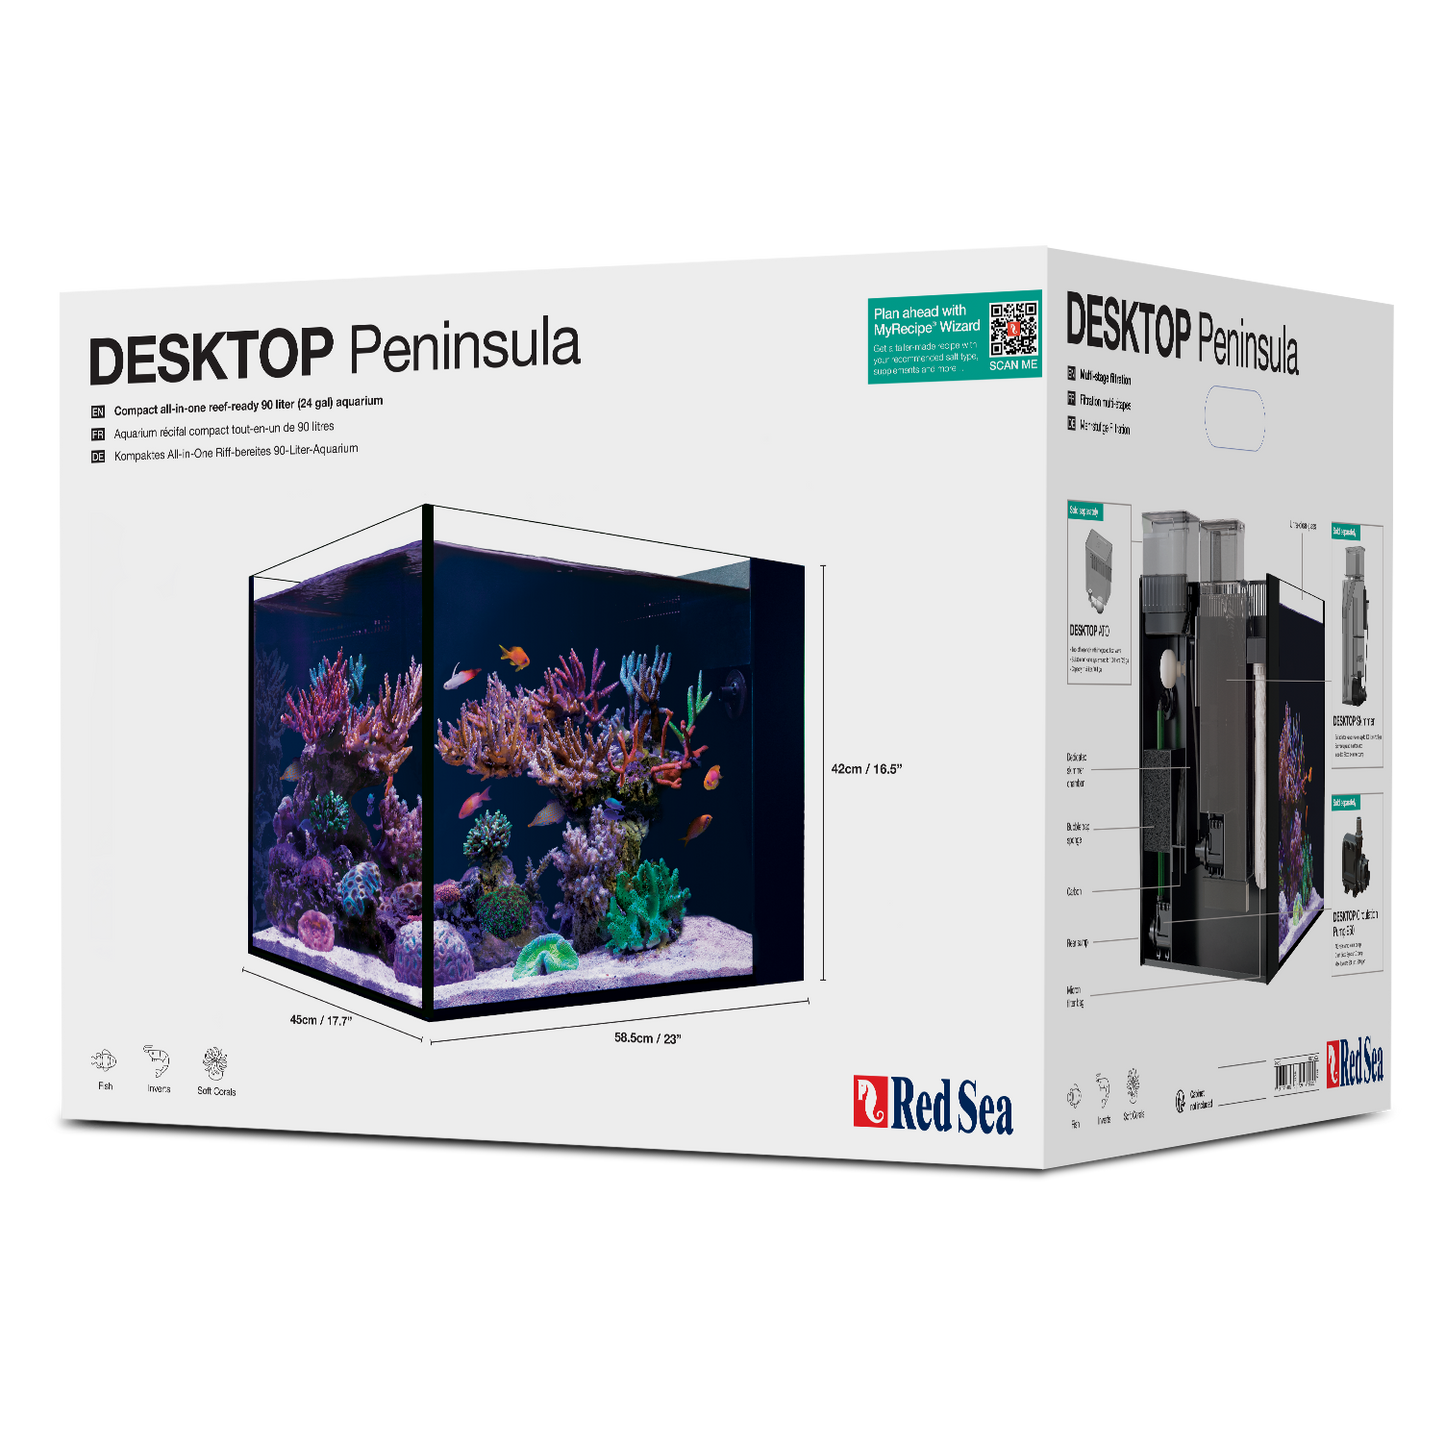 Red Sea Desktop Peninsula